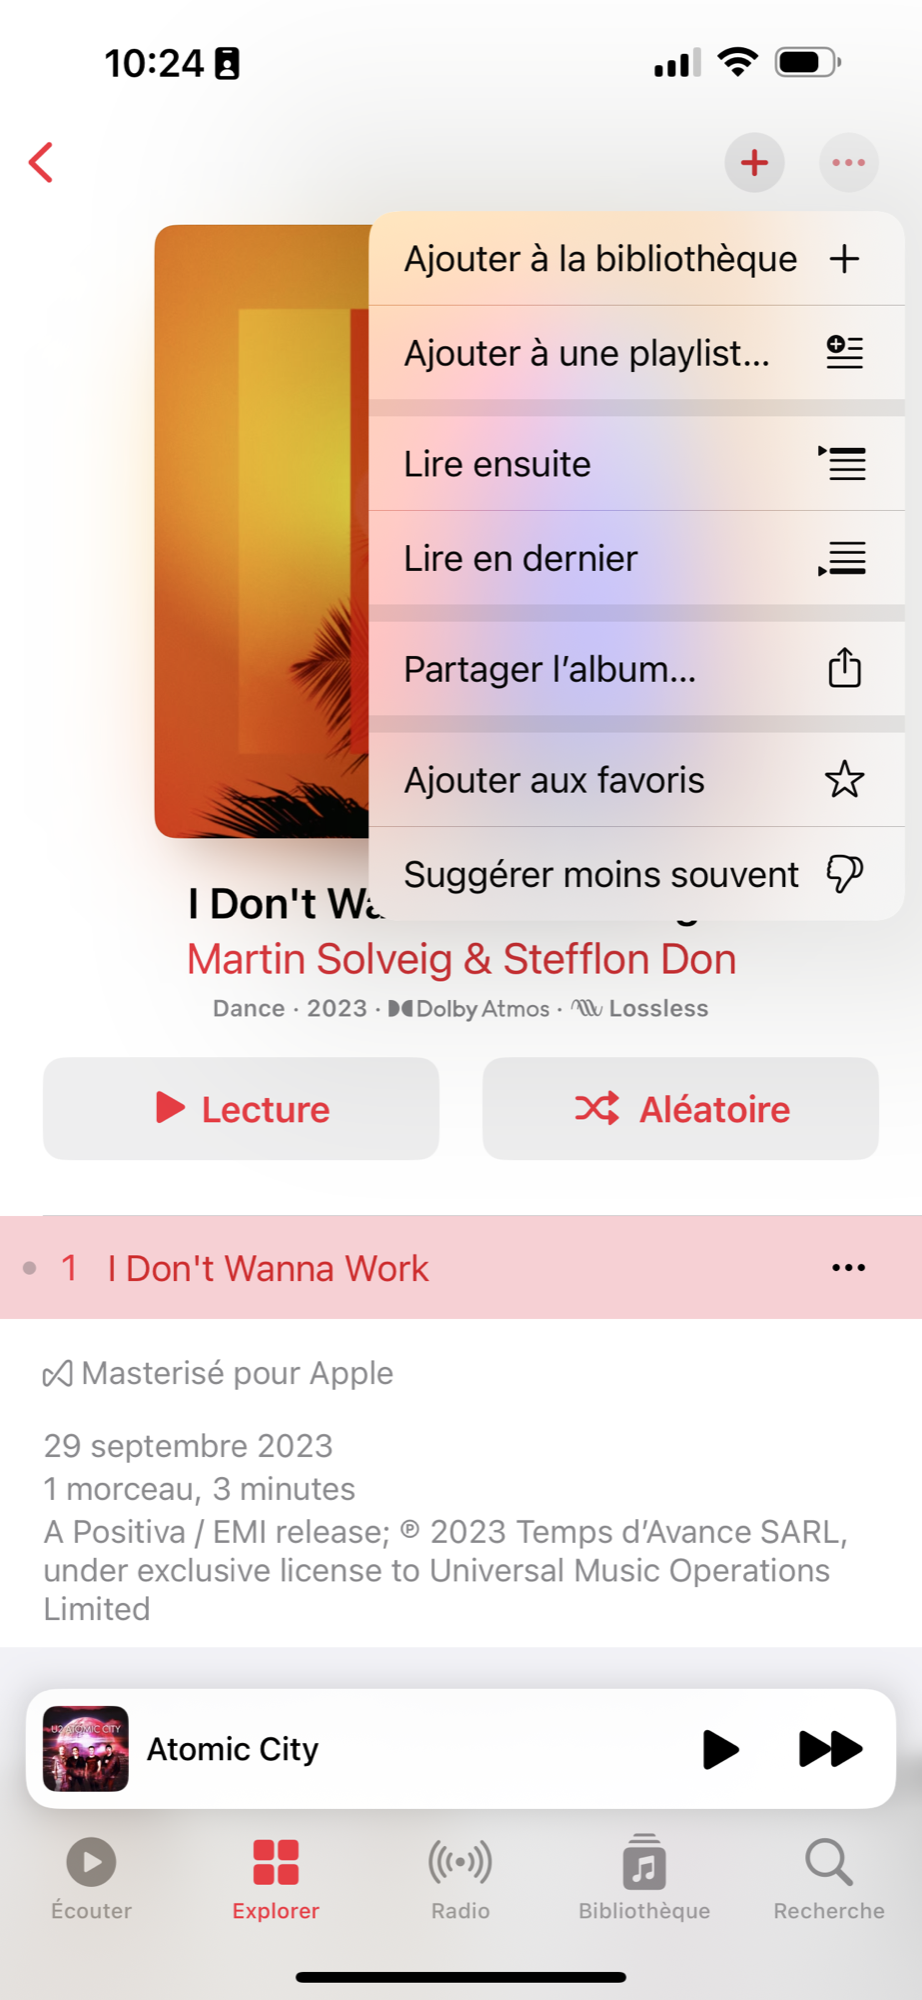 iOS 17.1 Musique © © Mathieu Grumiaux pour Clubic